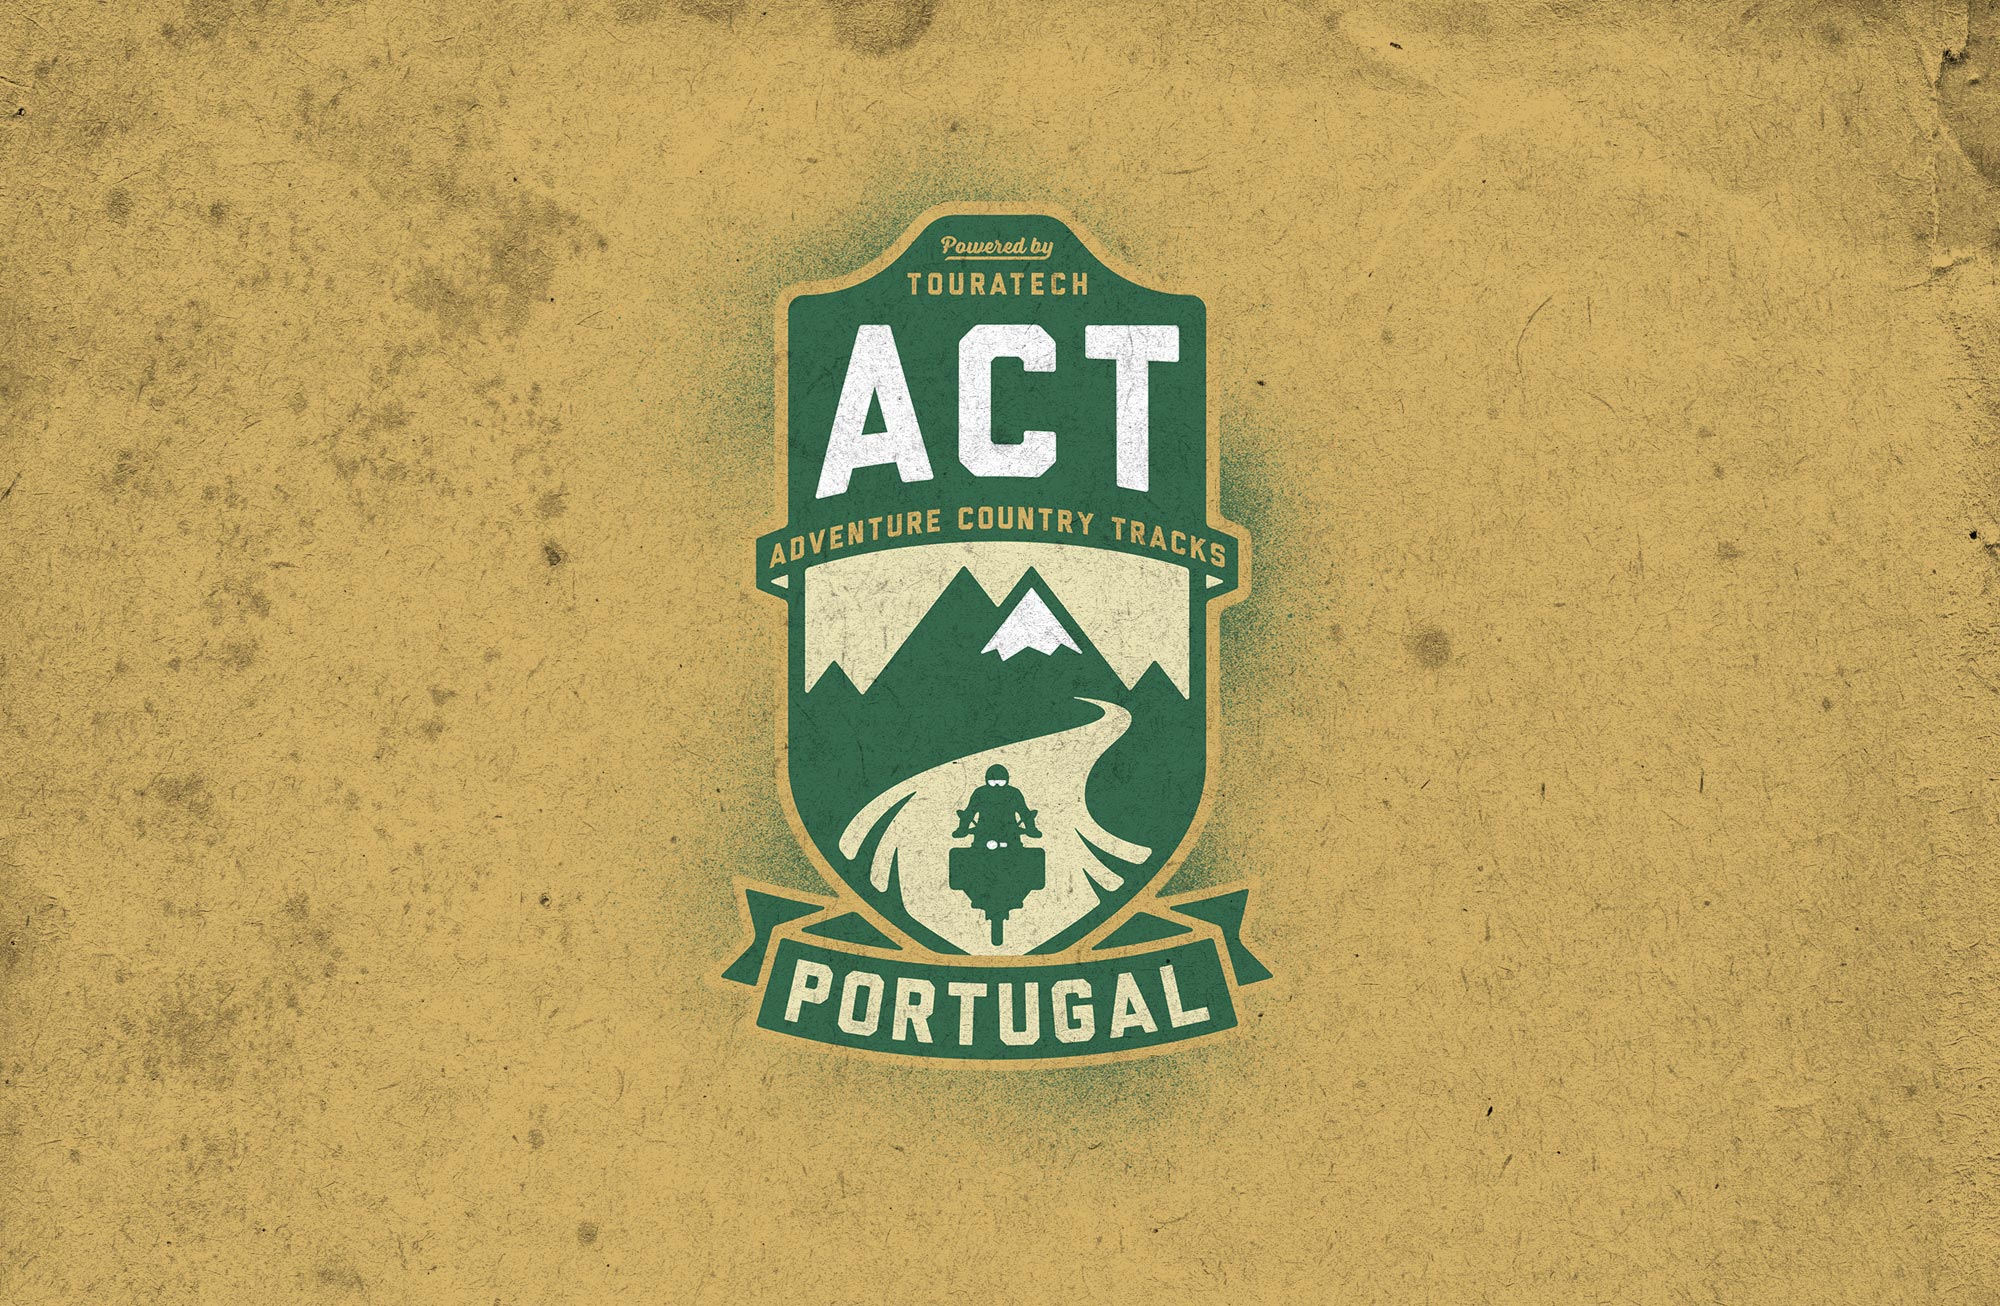 Man sieht das Logo der Adventure Country Tracks von TOURATECH. Das Logo hat eine Wappenform, oben sind die Buchstaben 